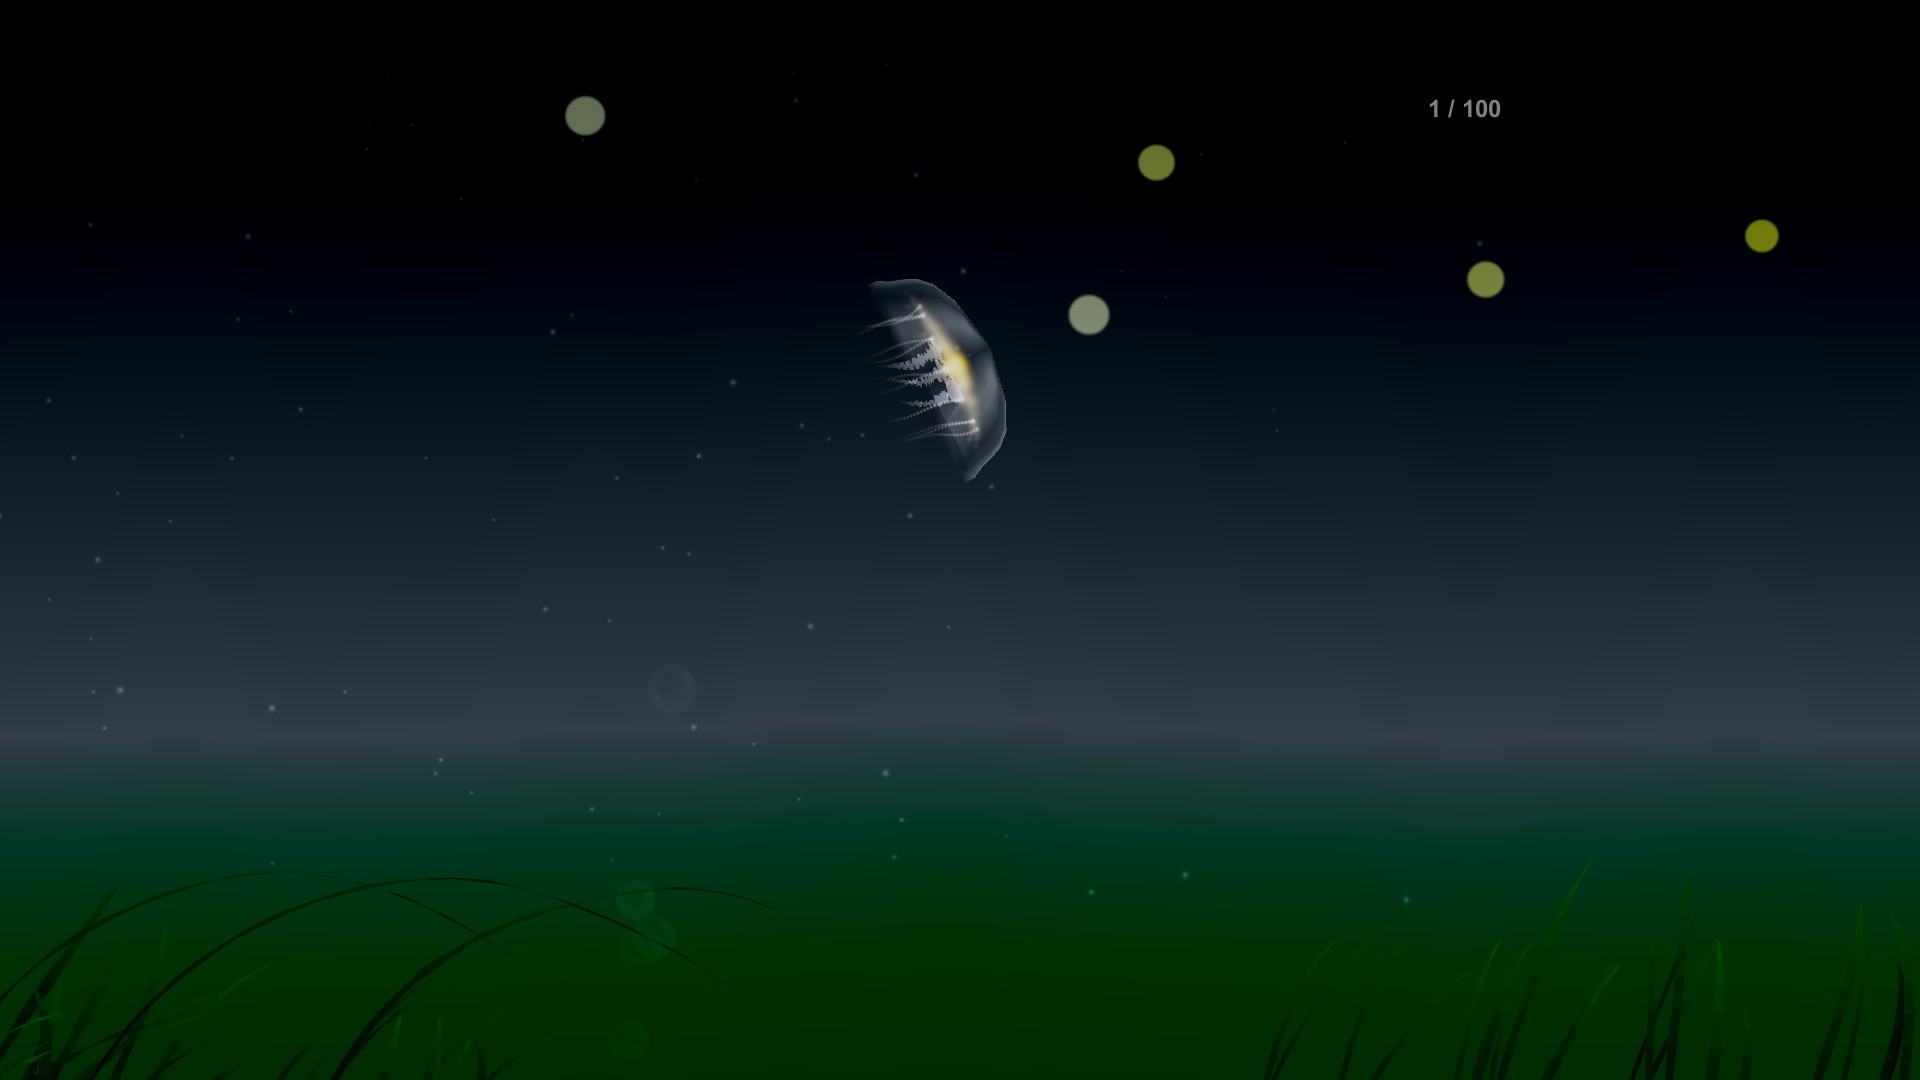 Jellyfish screenshot